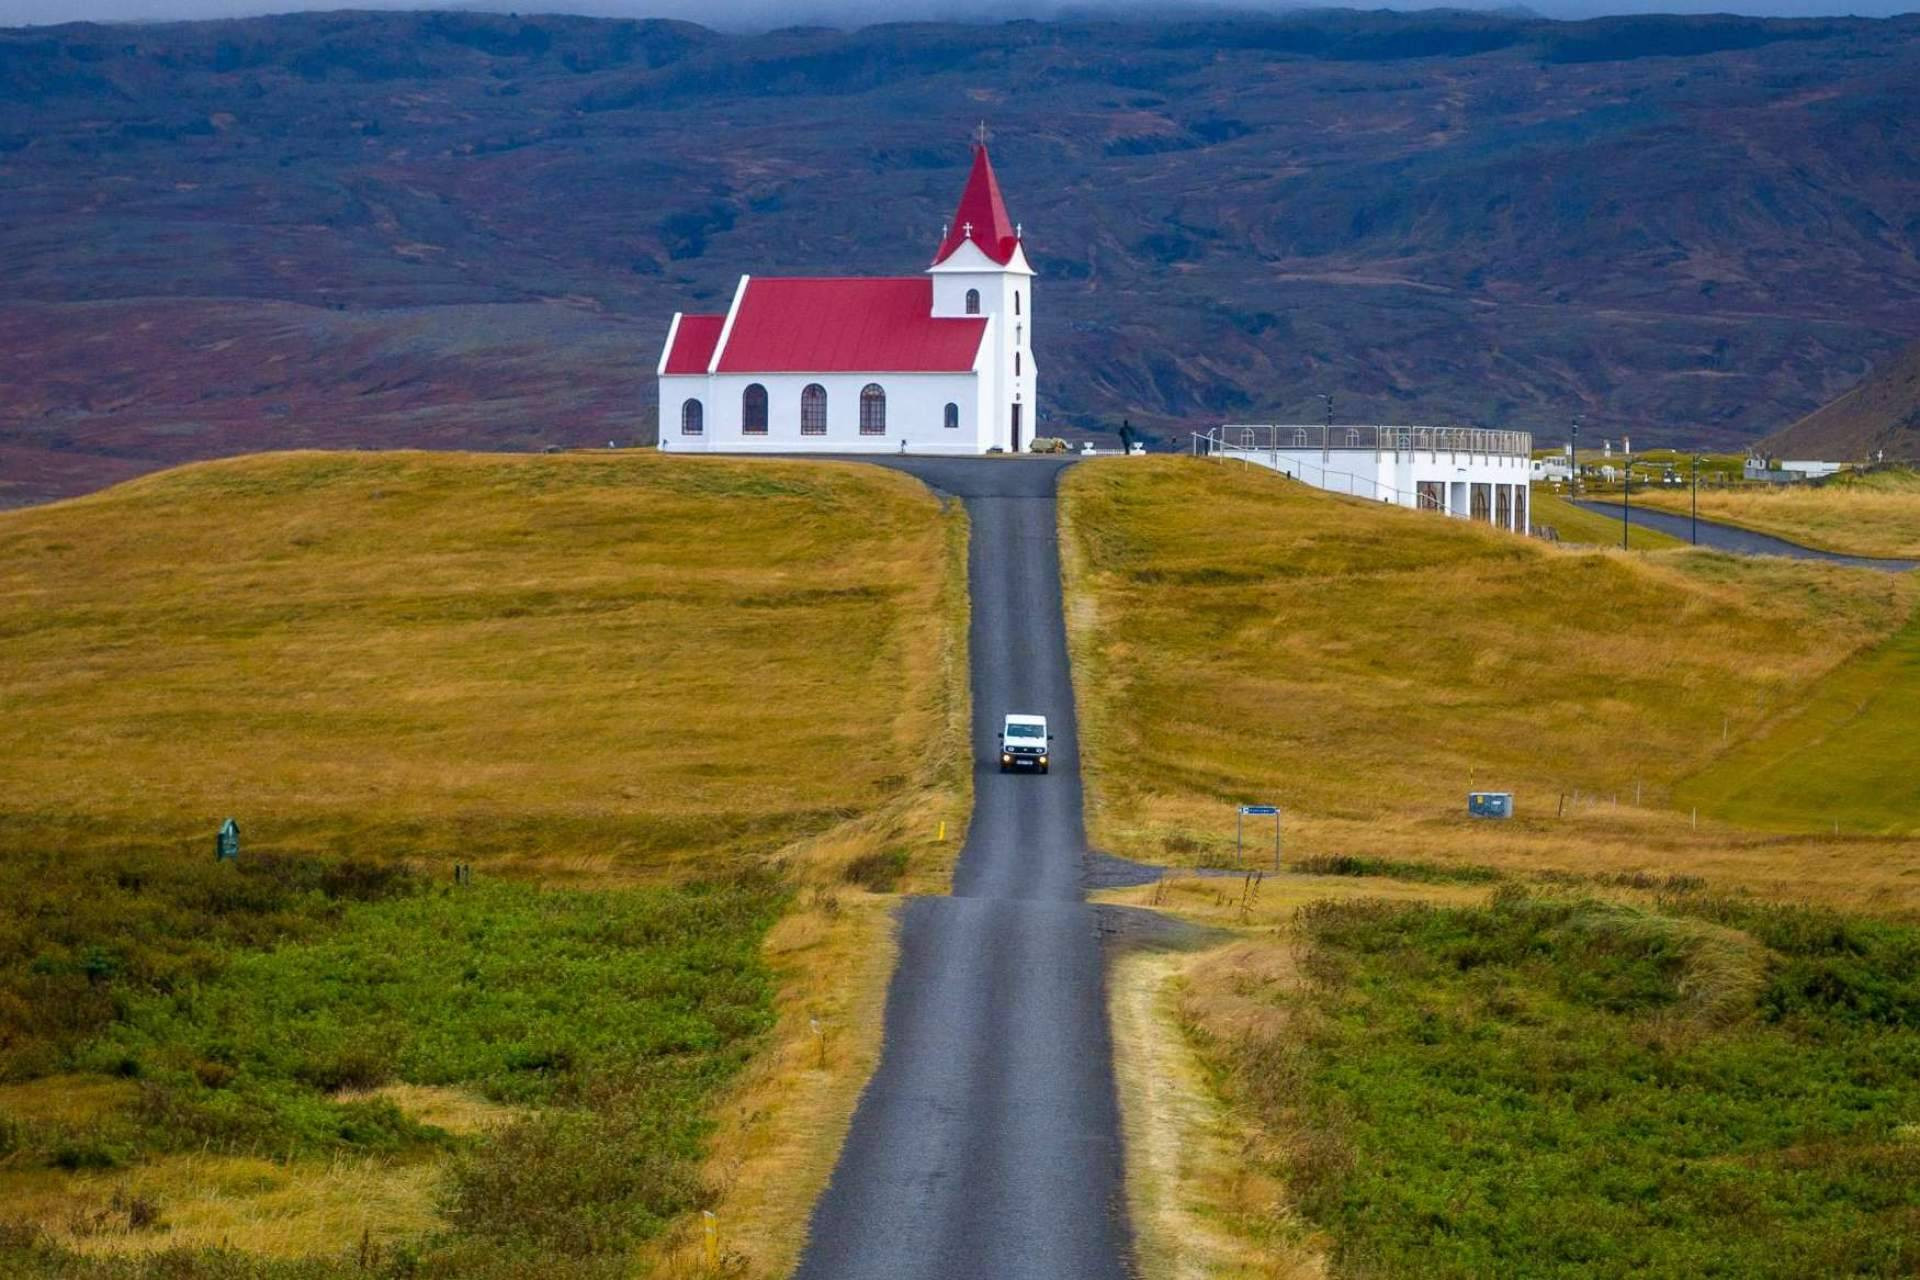  Los tours de día, una excelente forma de explorar Islandia 